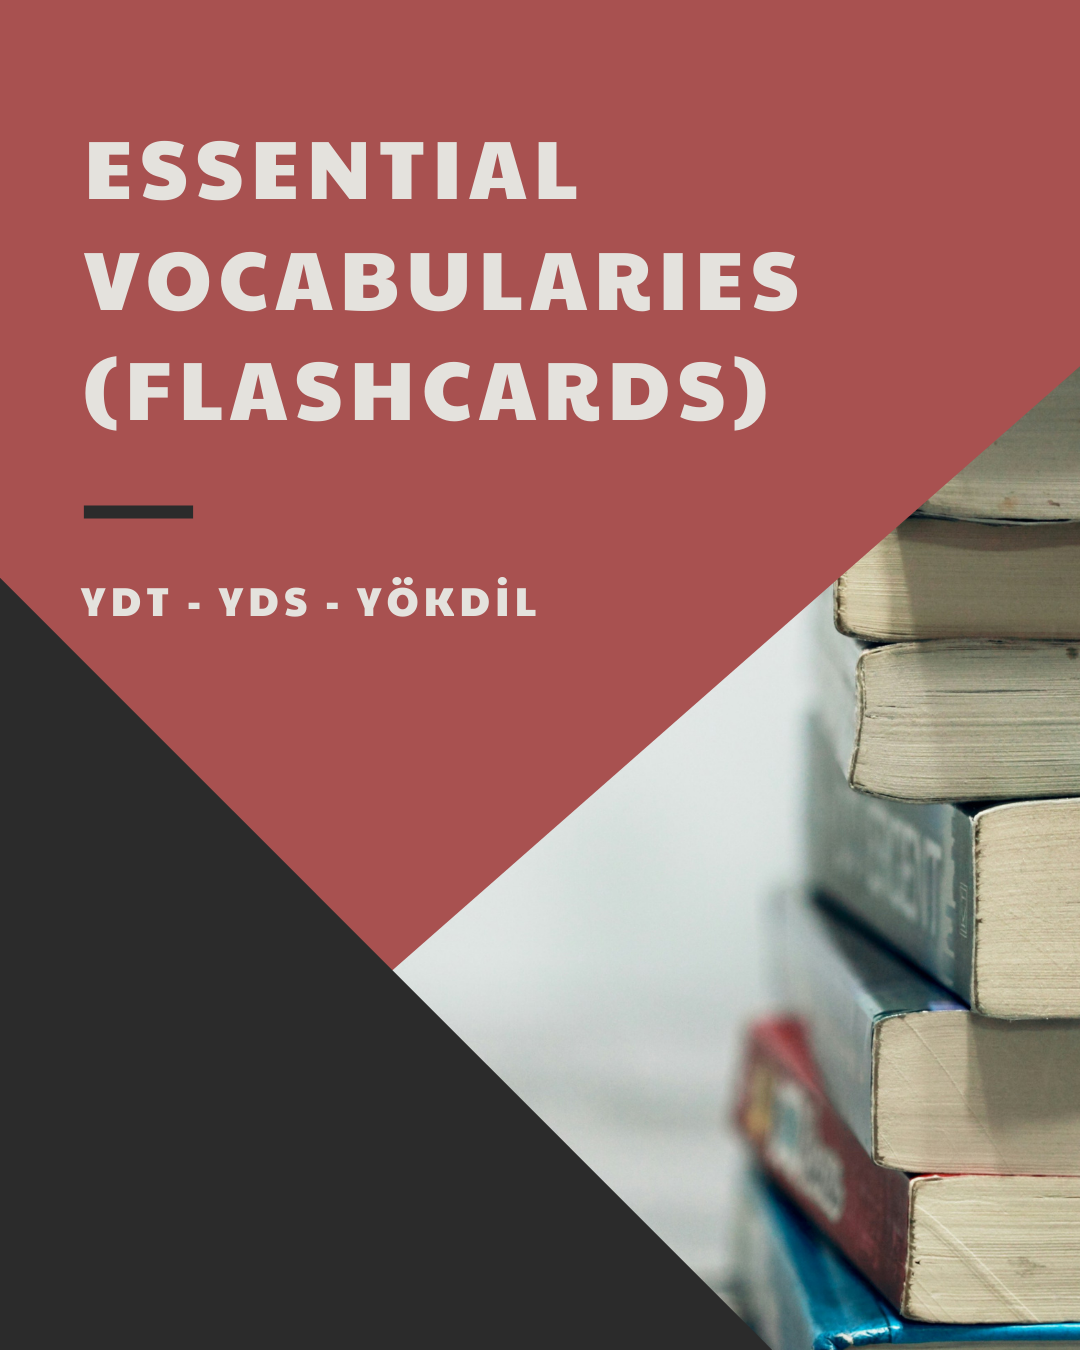 YDS / YÖKDİL / YDT Kelimeleri için Flashcard